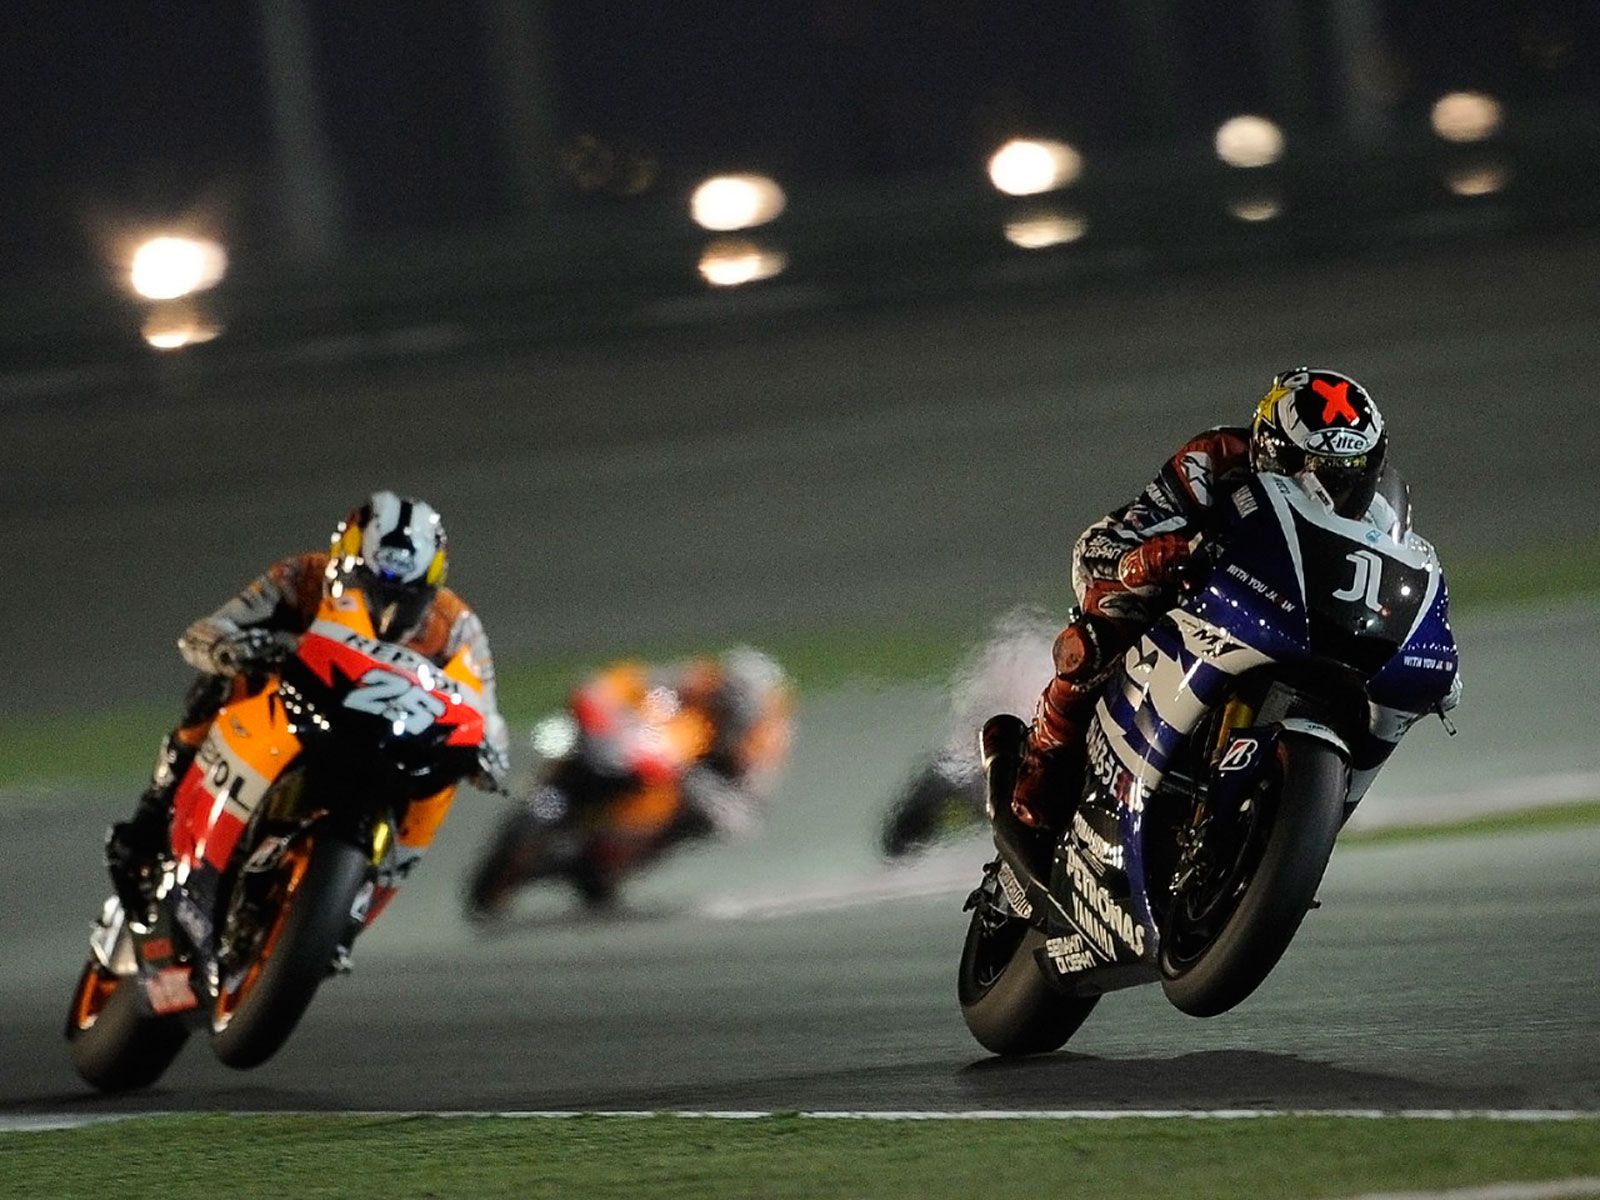 wallpaper motogp keren,grand prix motorcycle racing,sports,racing,motorsport,superbike racing